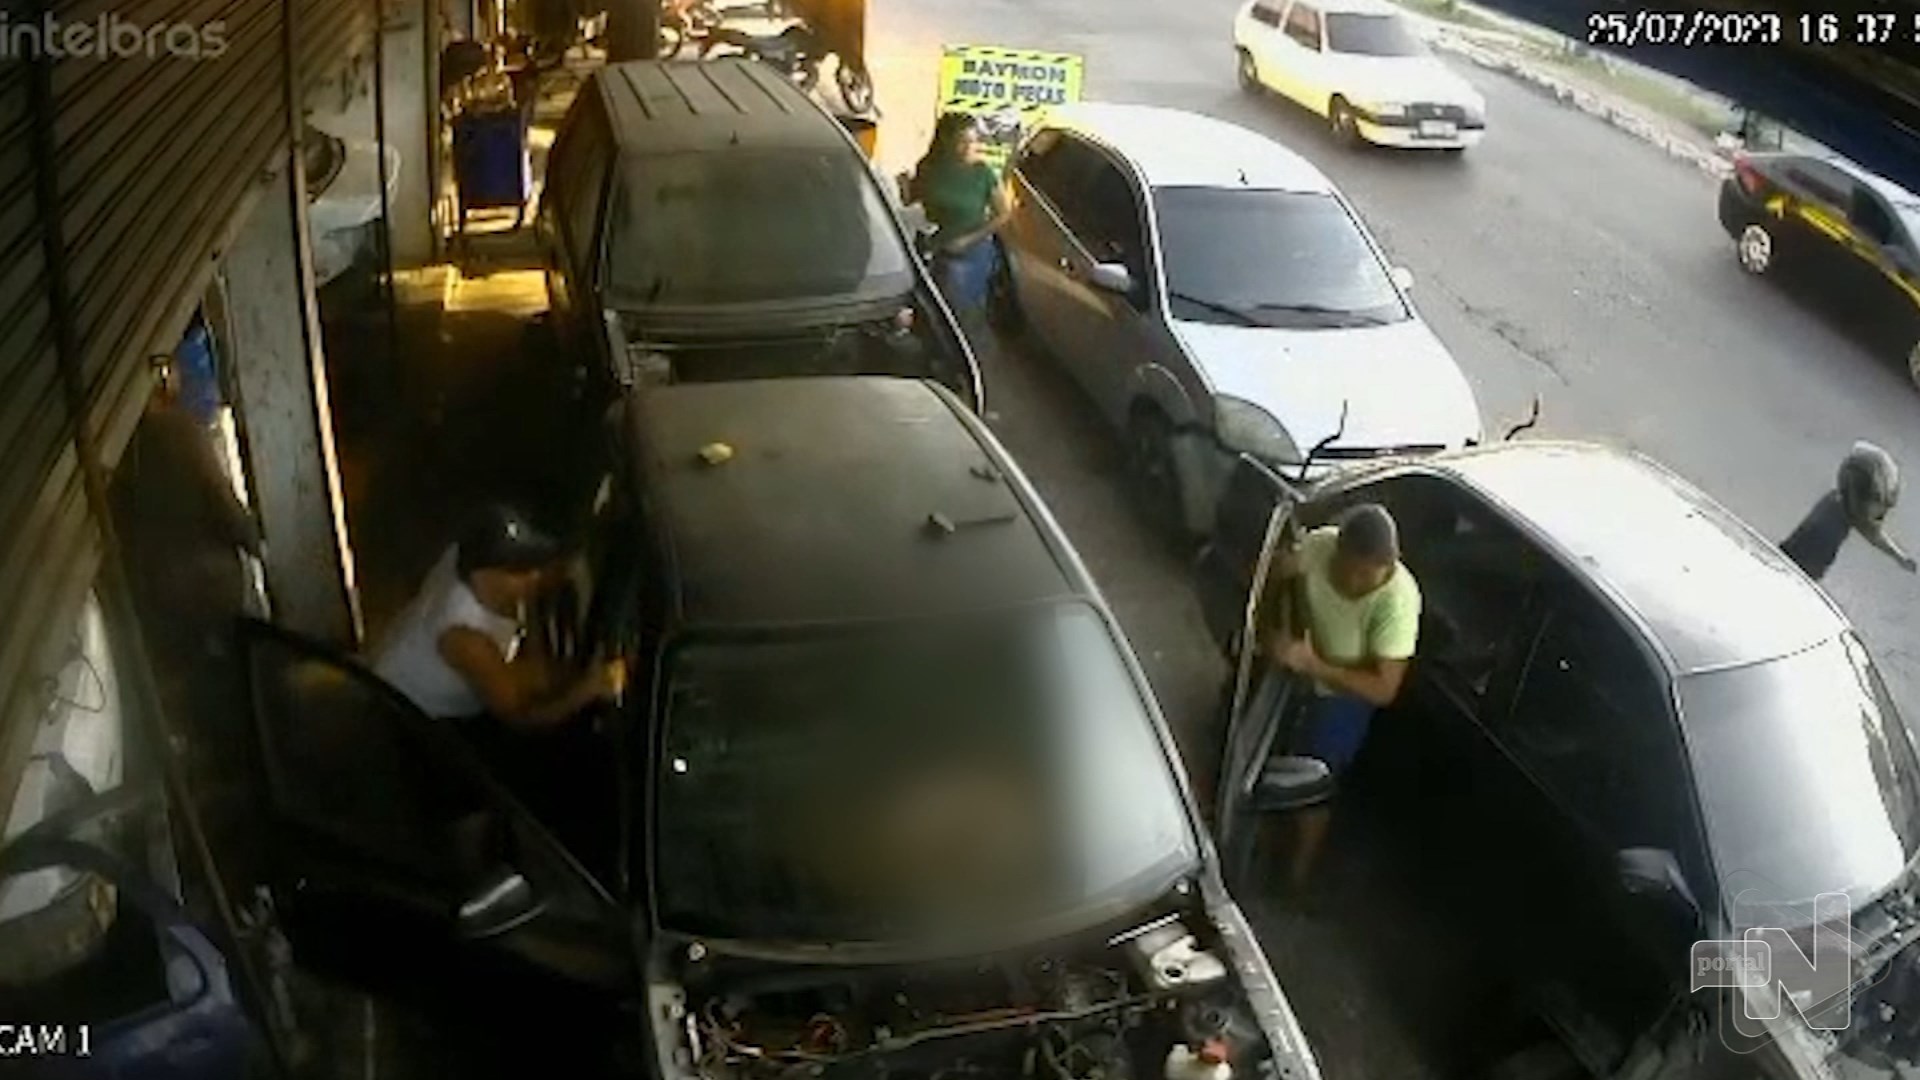 Mecânico é baleado enquanto realizava atendimento em oficina de Manaus - Foto: Reprodução/TV Norte Amazonas